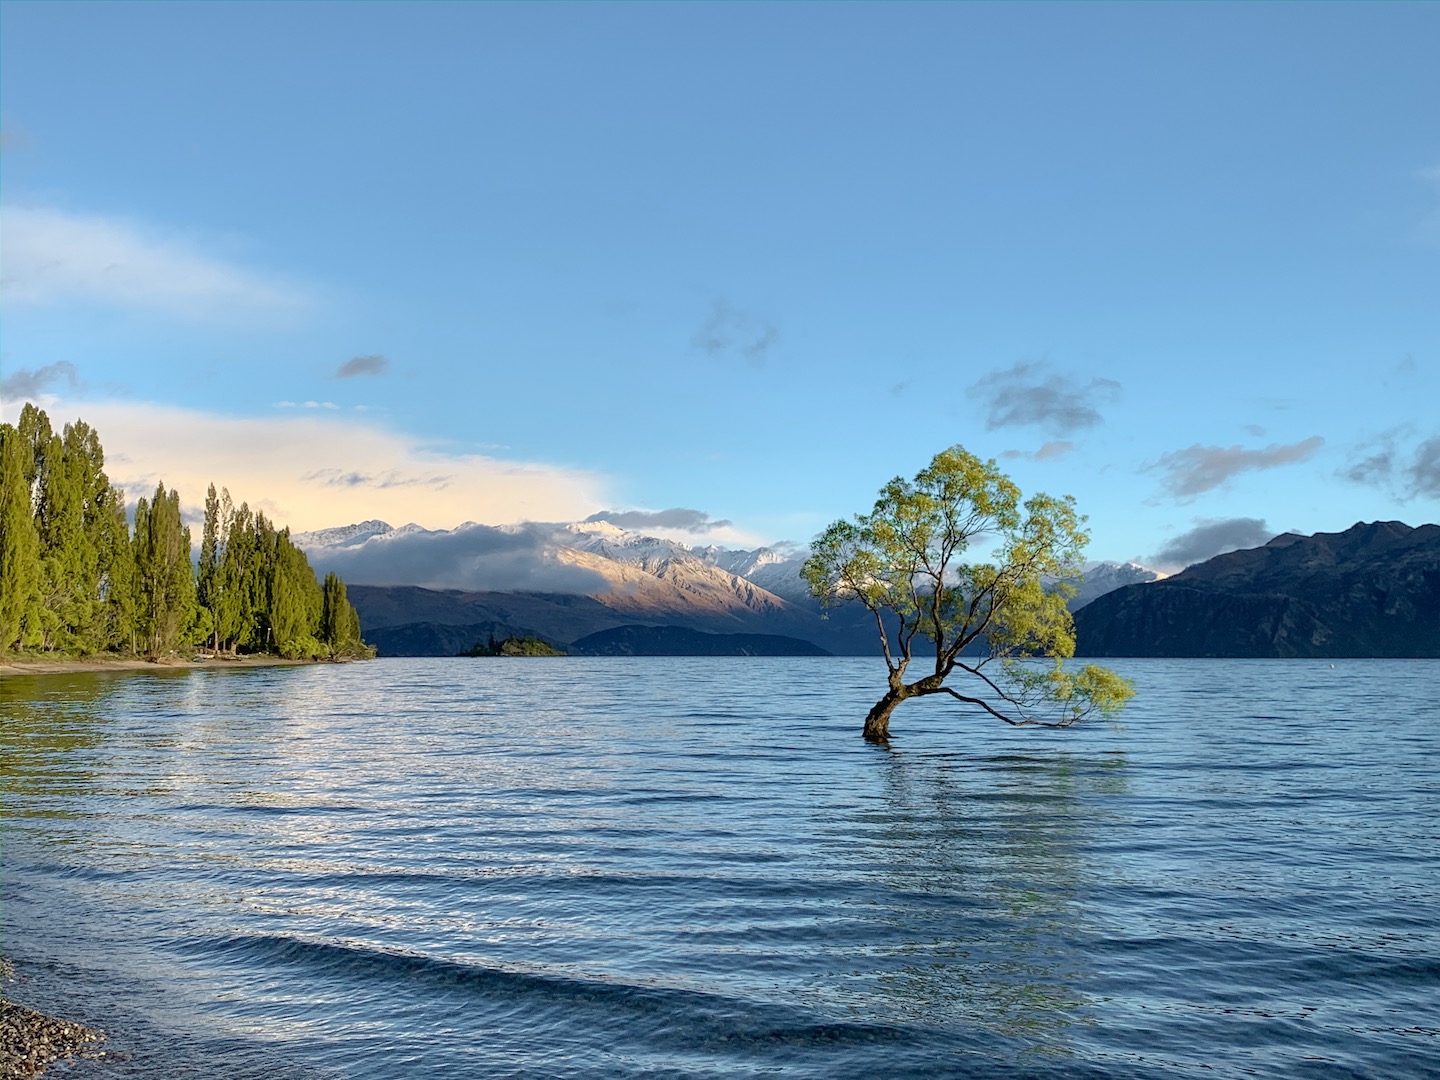 The Wanaka Tree - Lake Wanaka, New Zealand